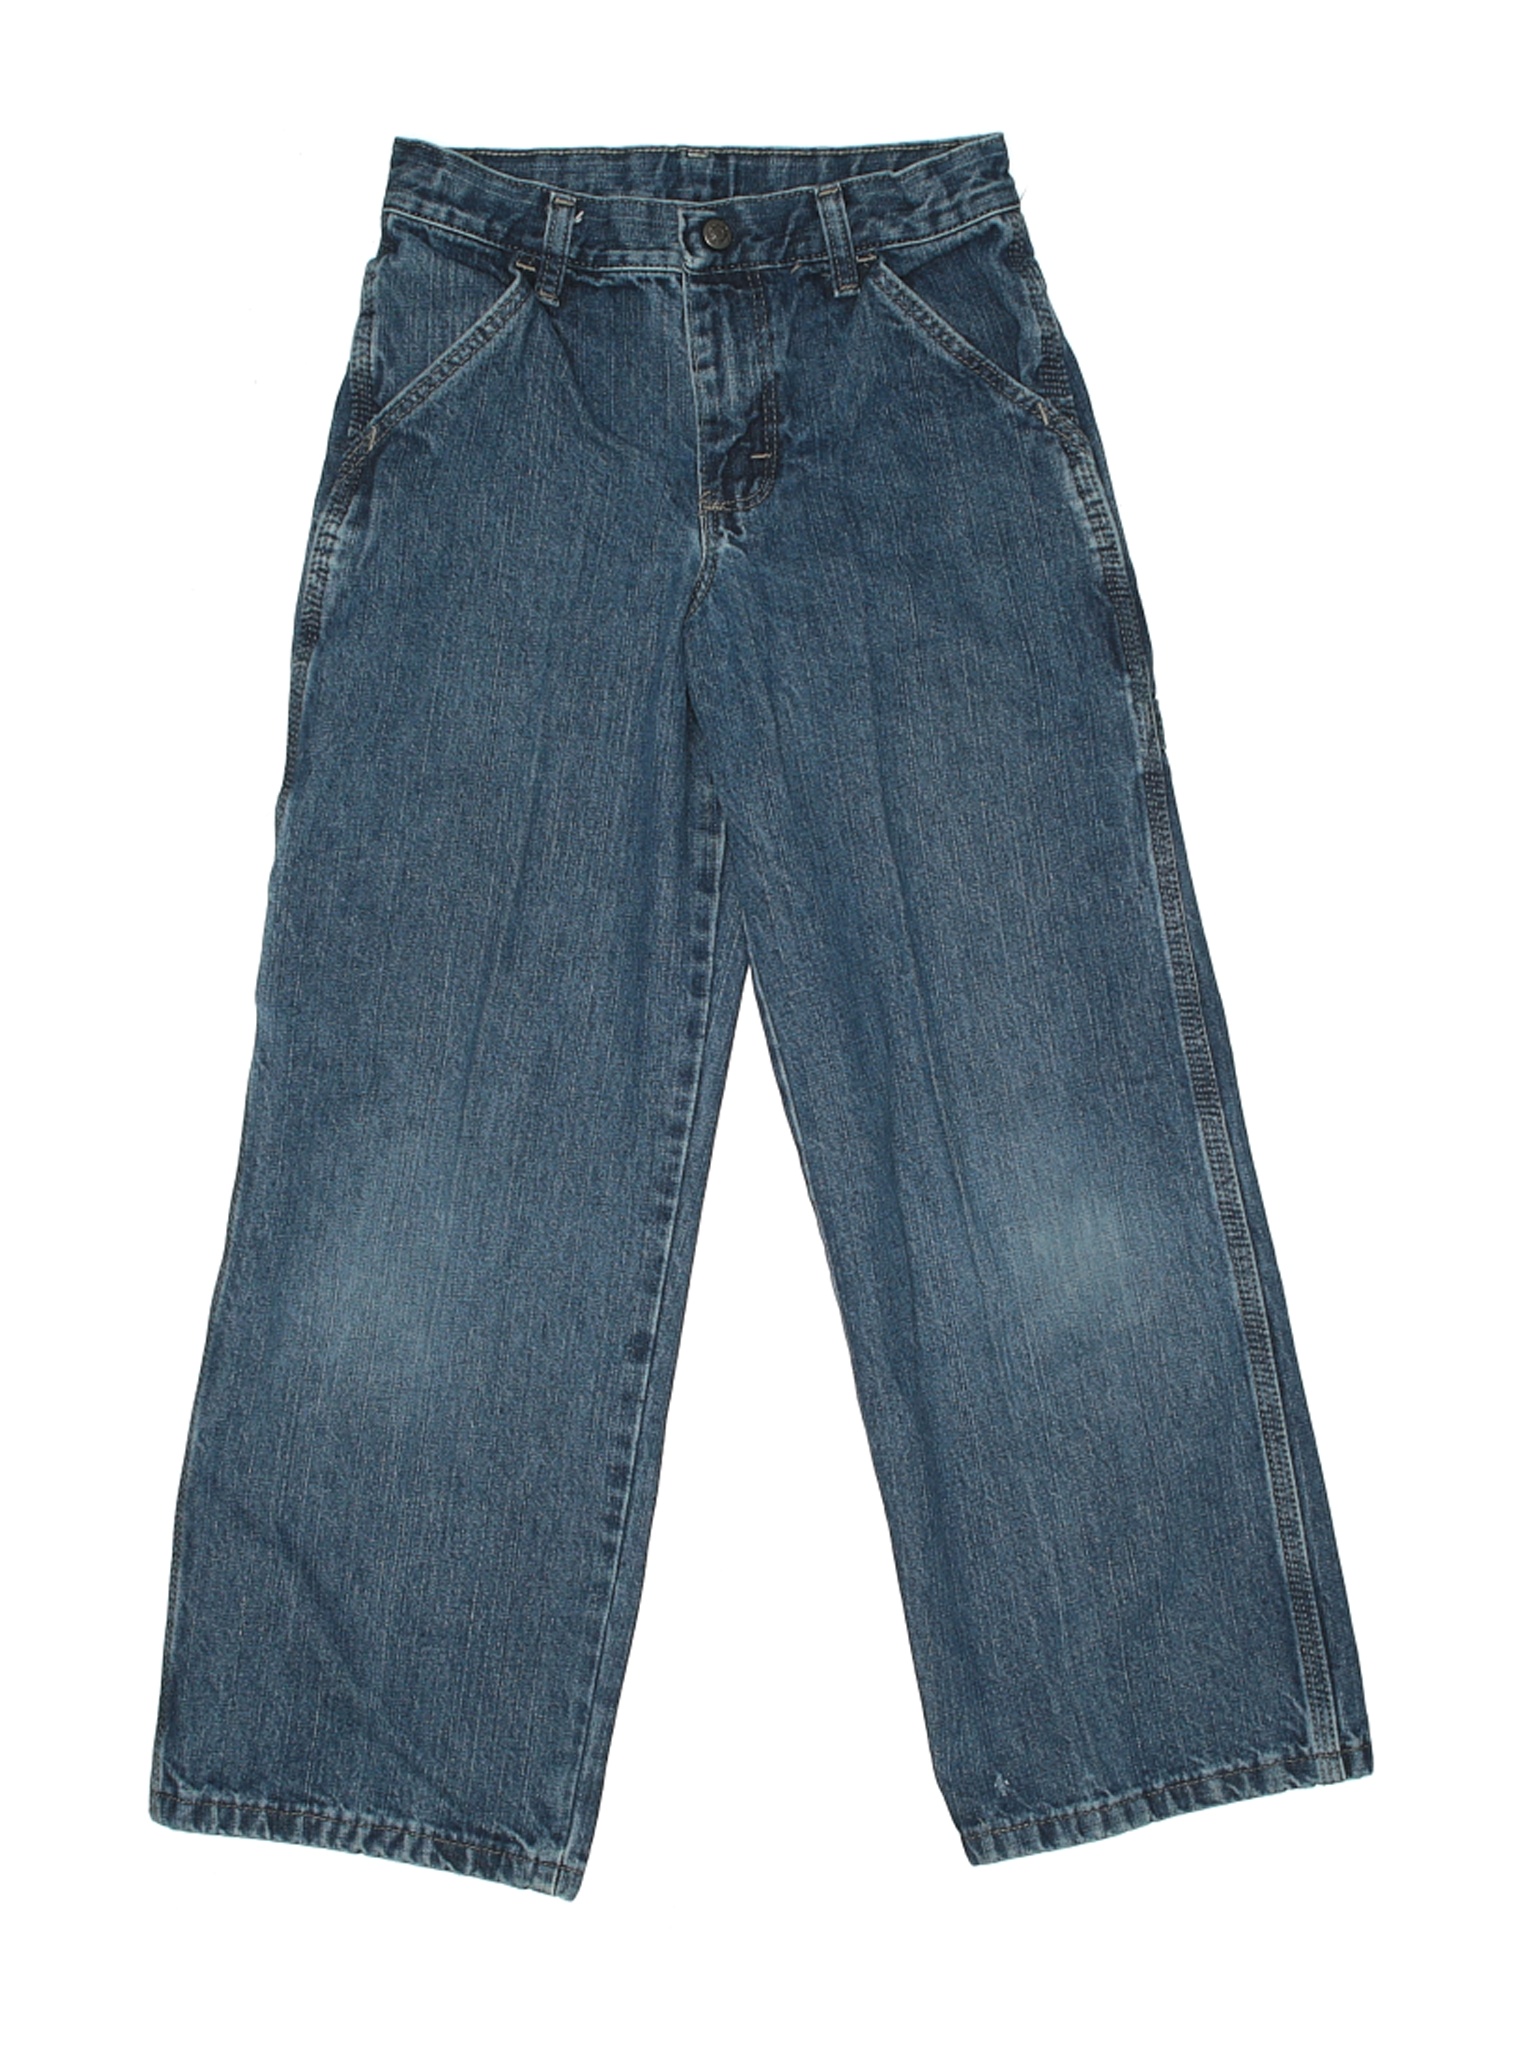 Wrangler Jeans Co Boys Green Jeans 10 | eBay